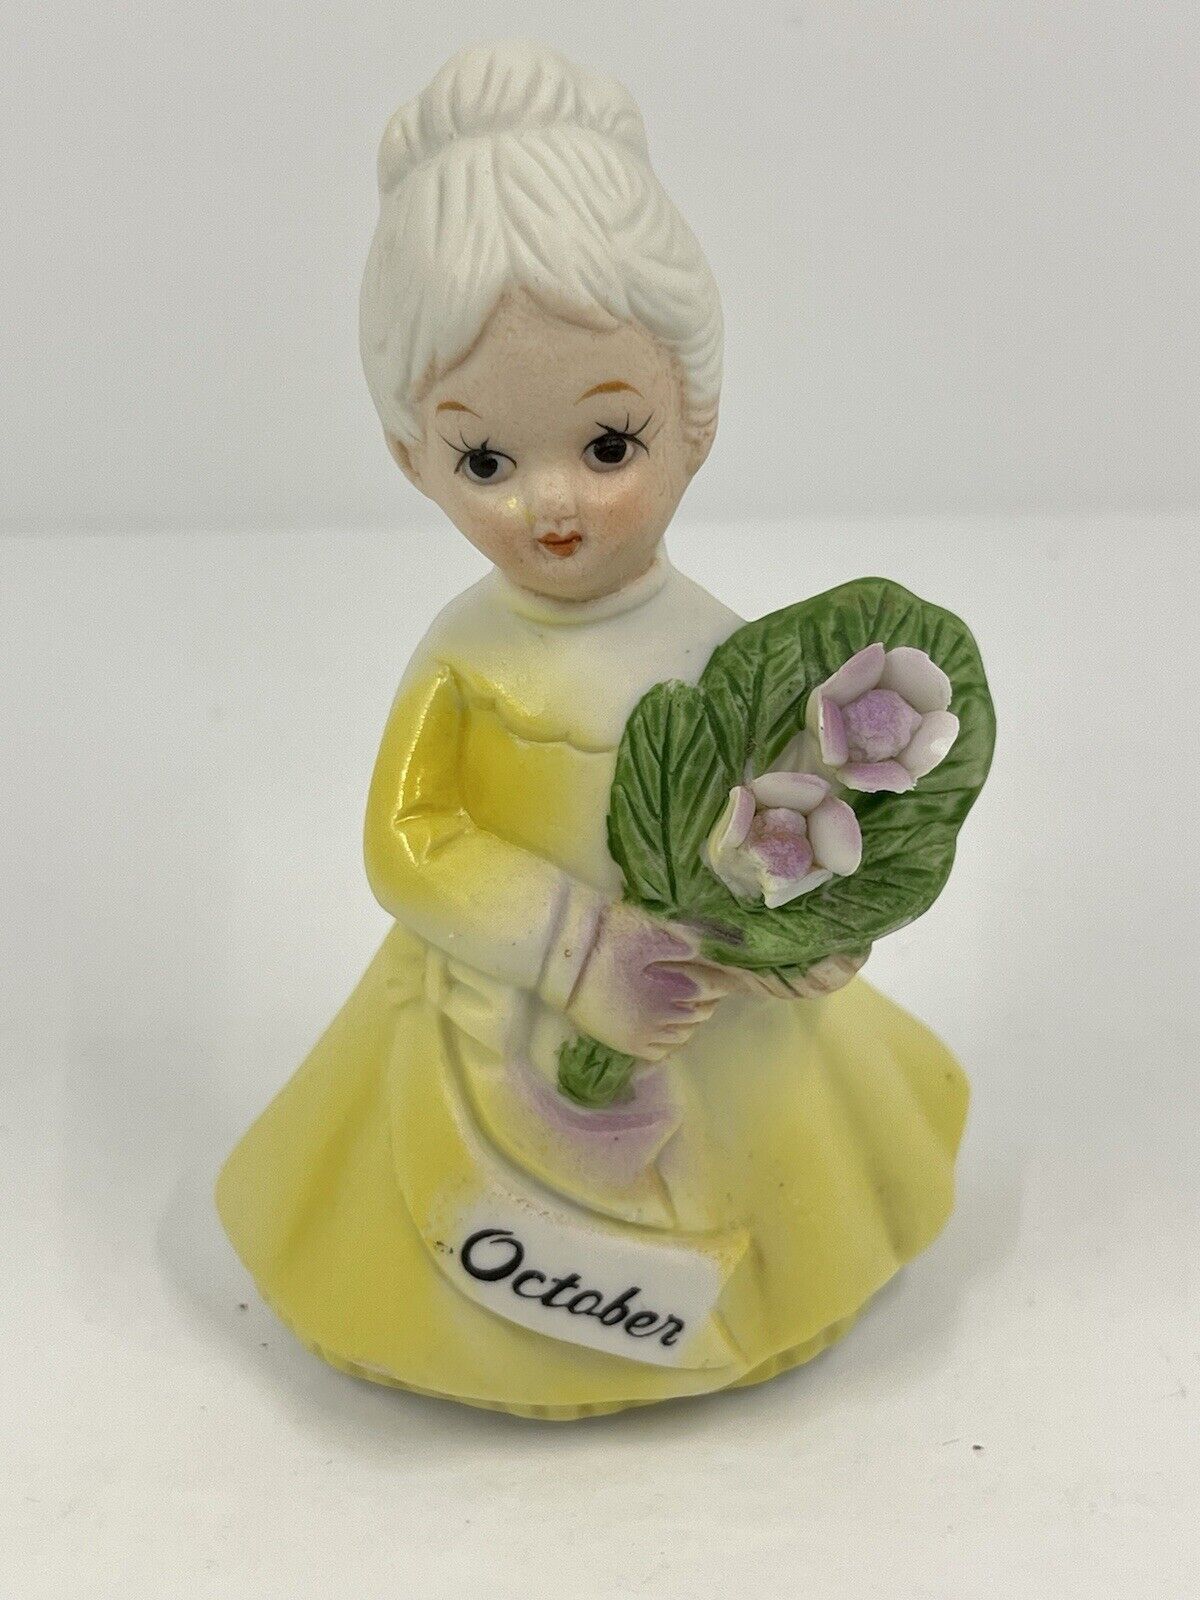 Vintage BRINN'S Birthday Birth Month October Ceramic Figurine